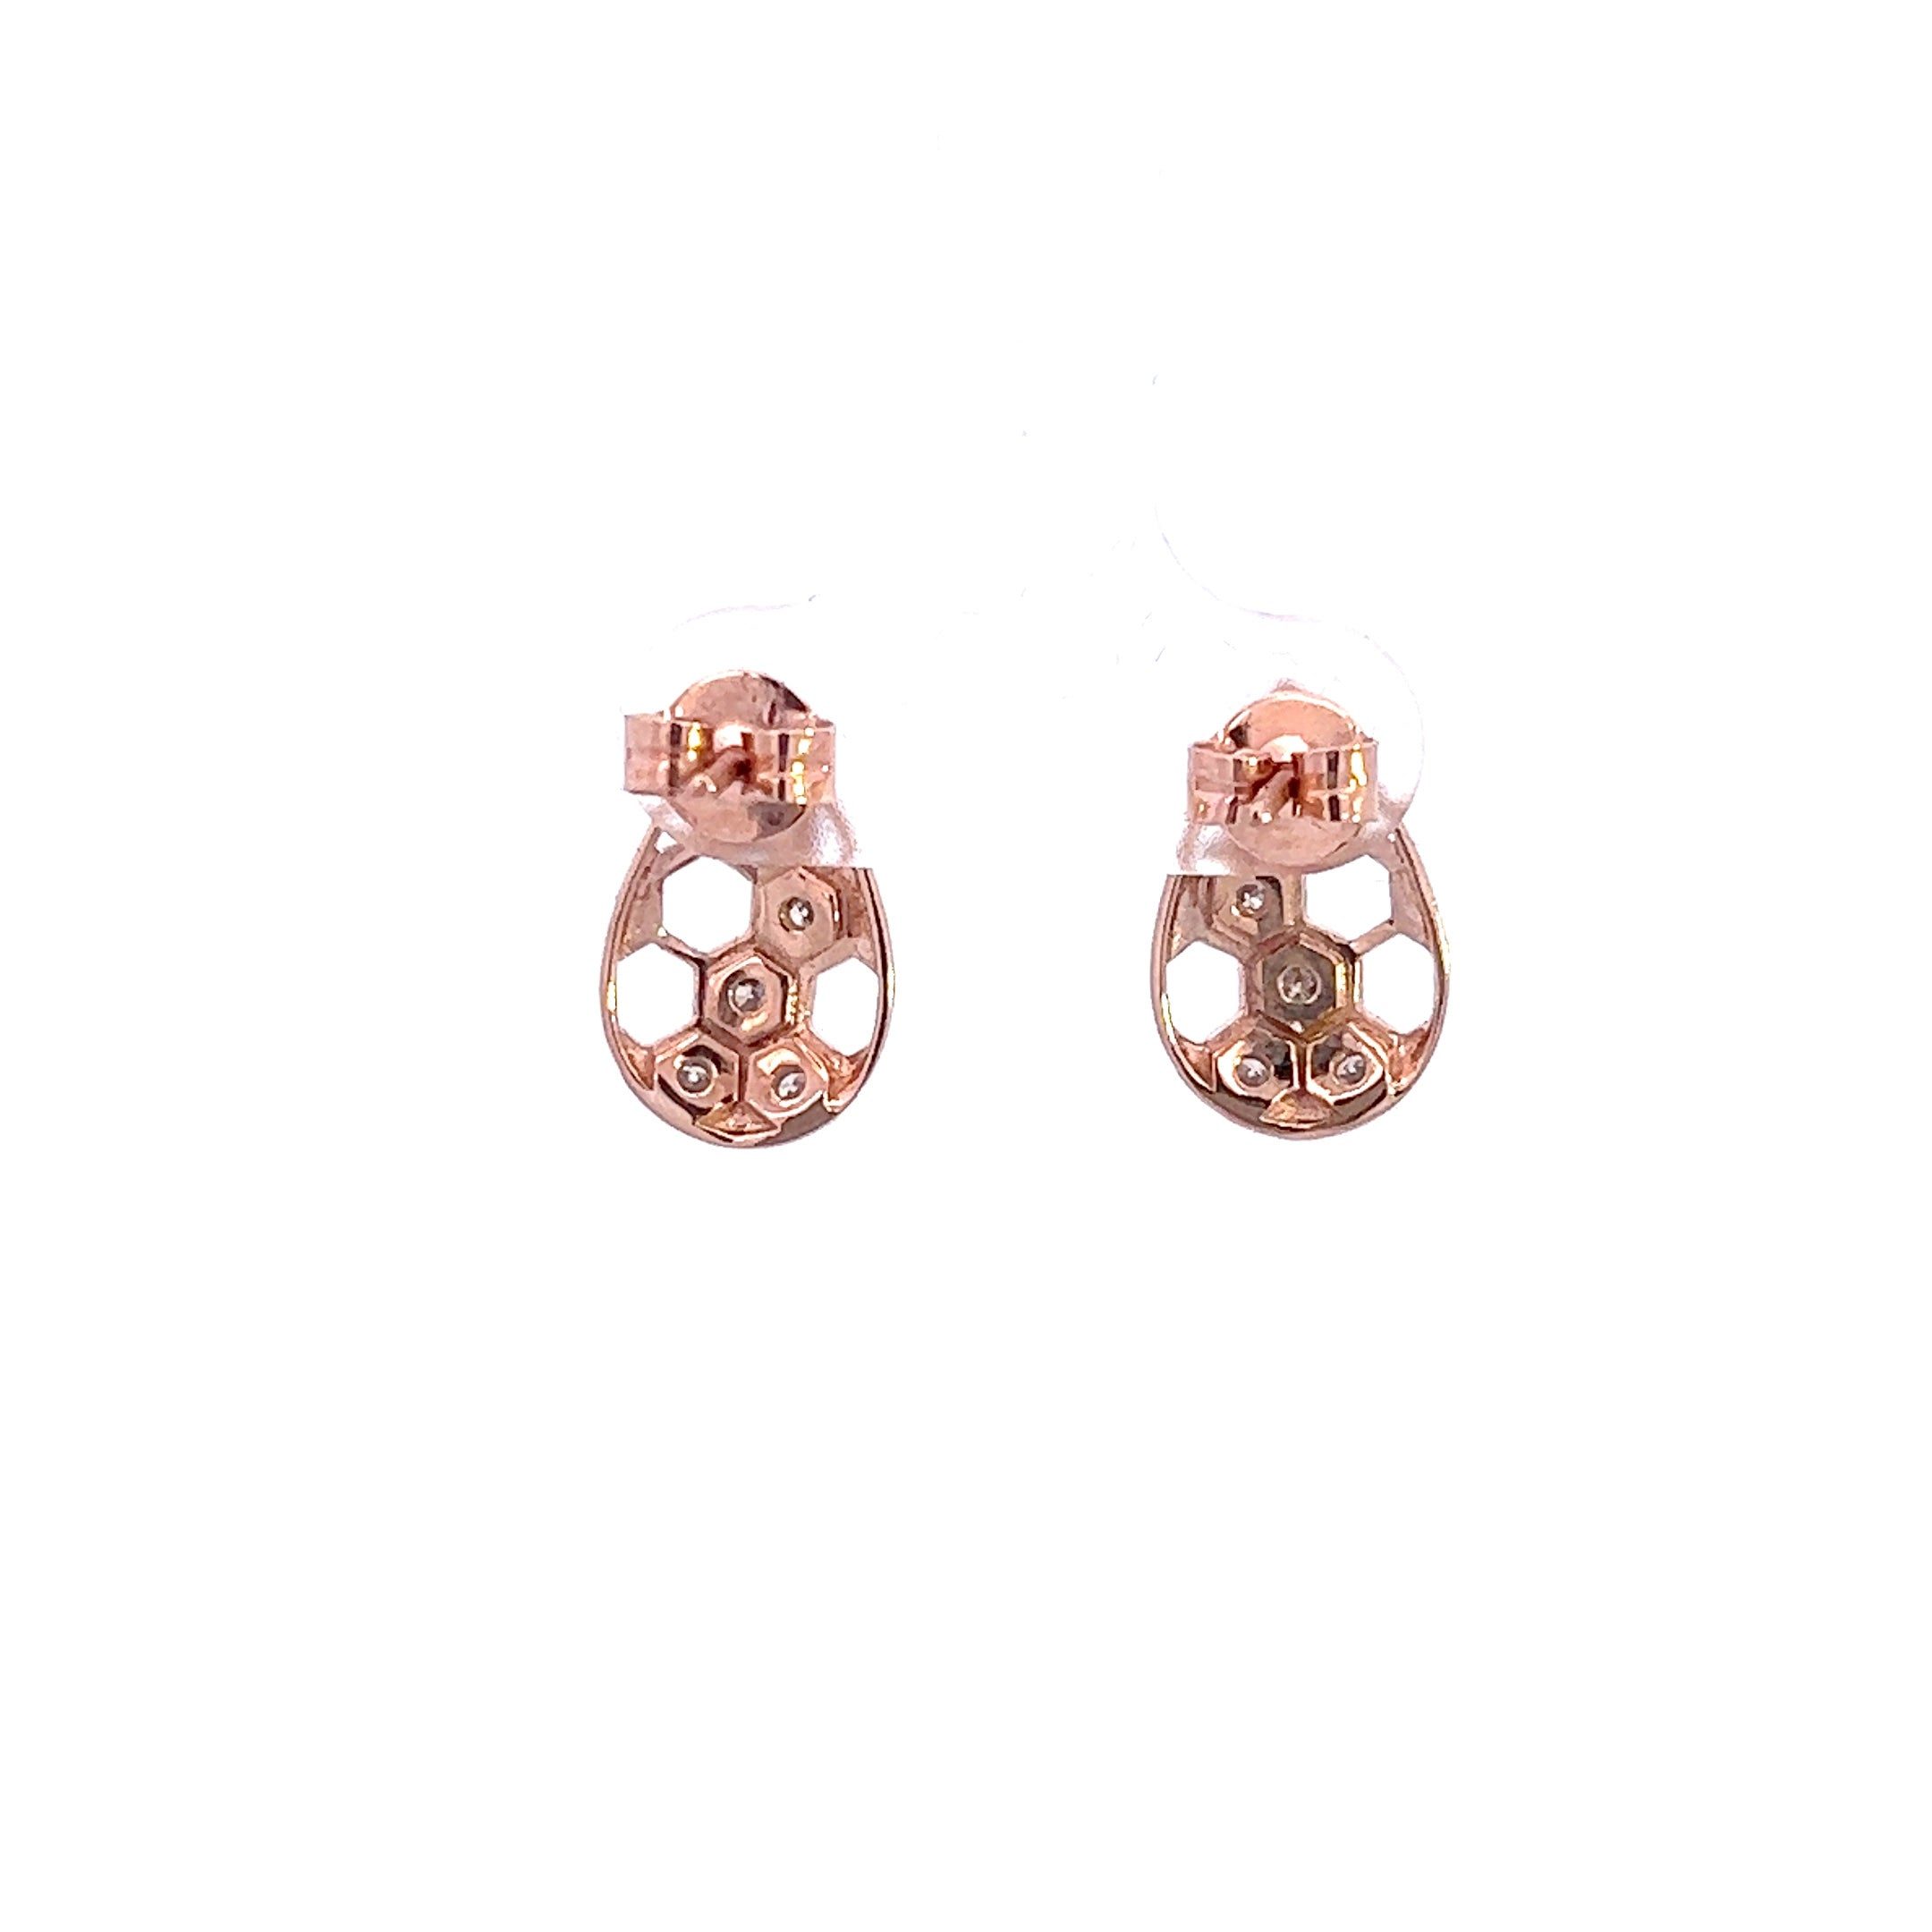 Delicate 14K Rose Gold Teardrop Earrings with Dazzling Diamonds